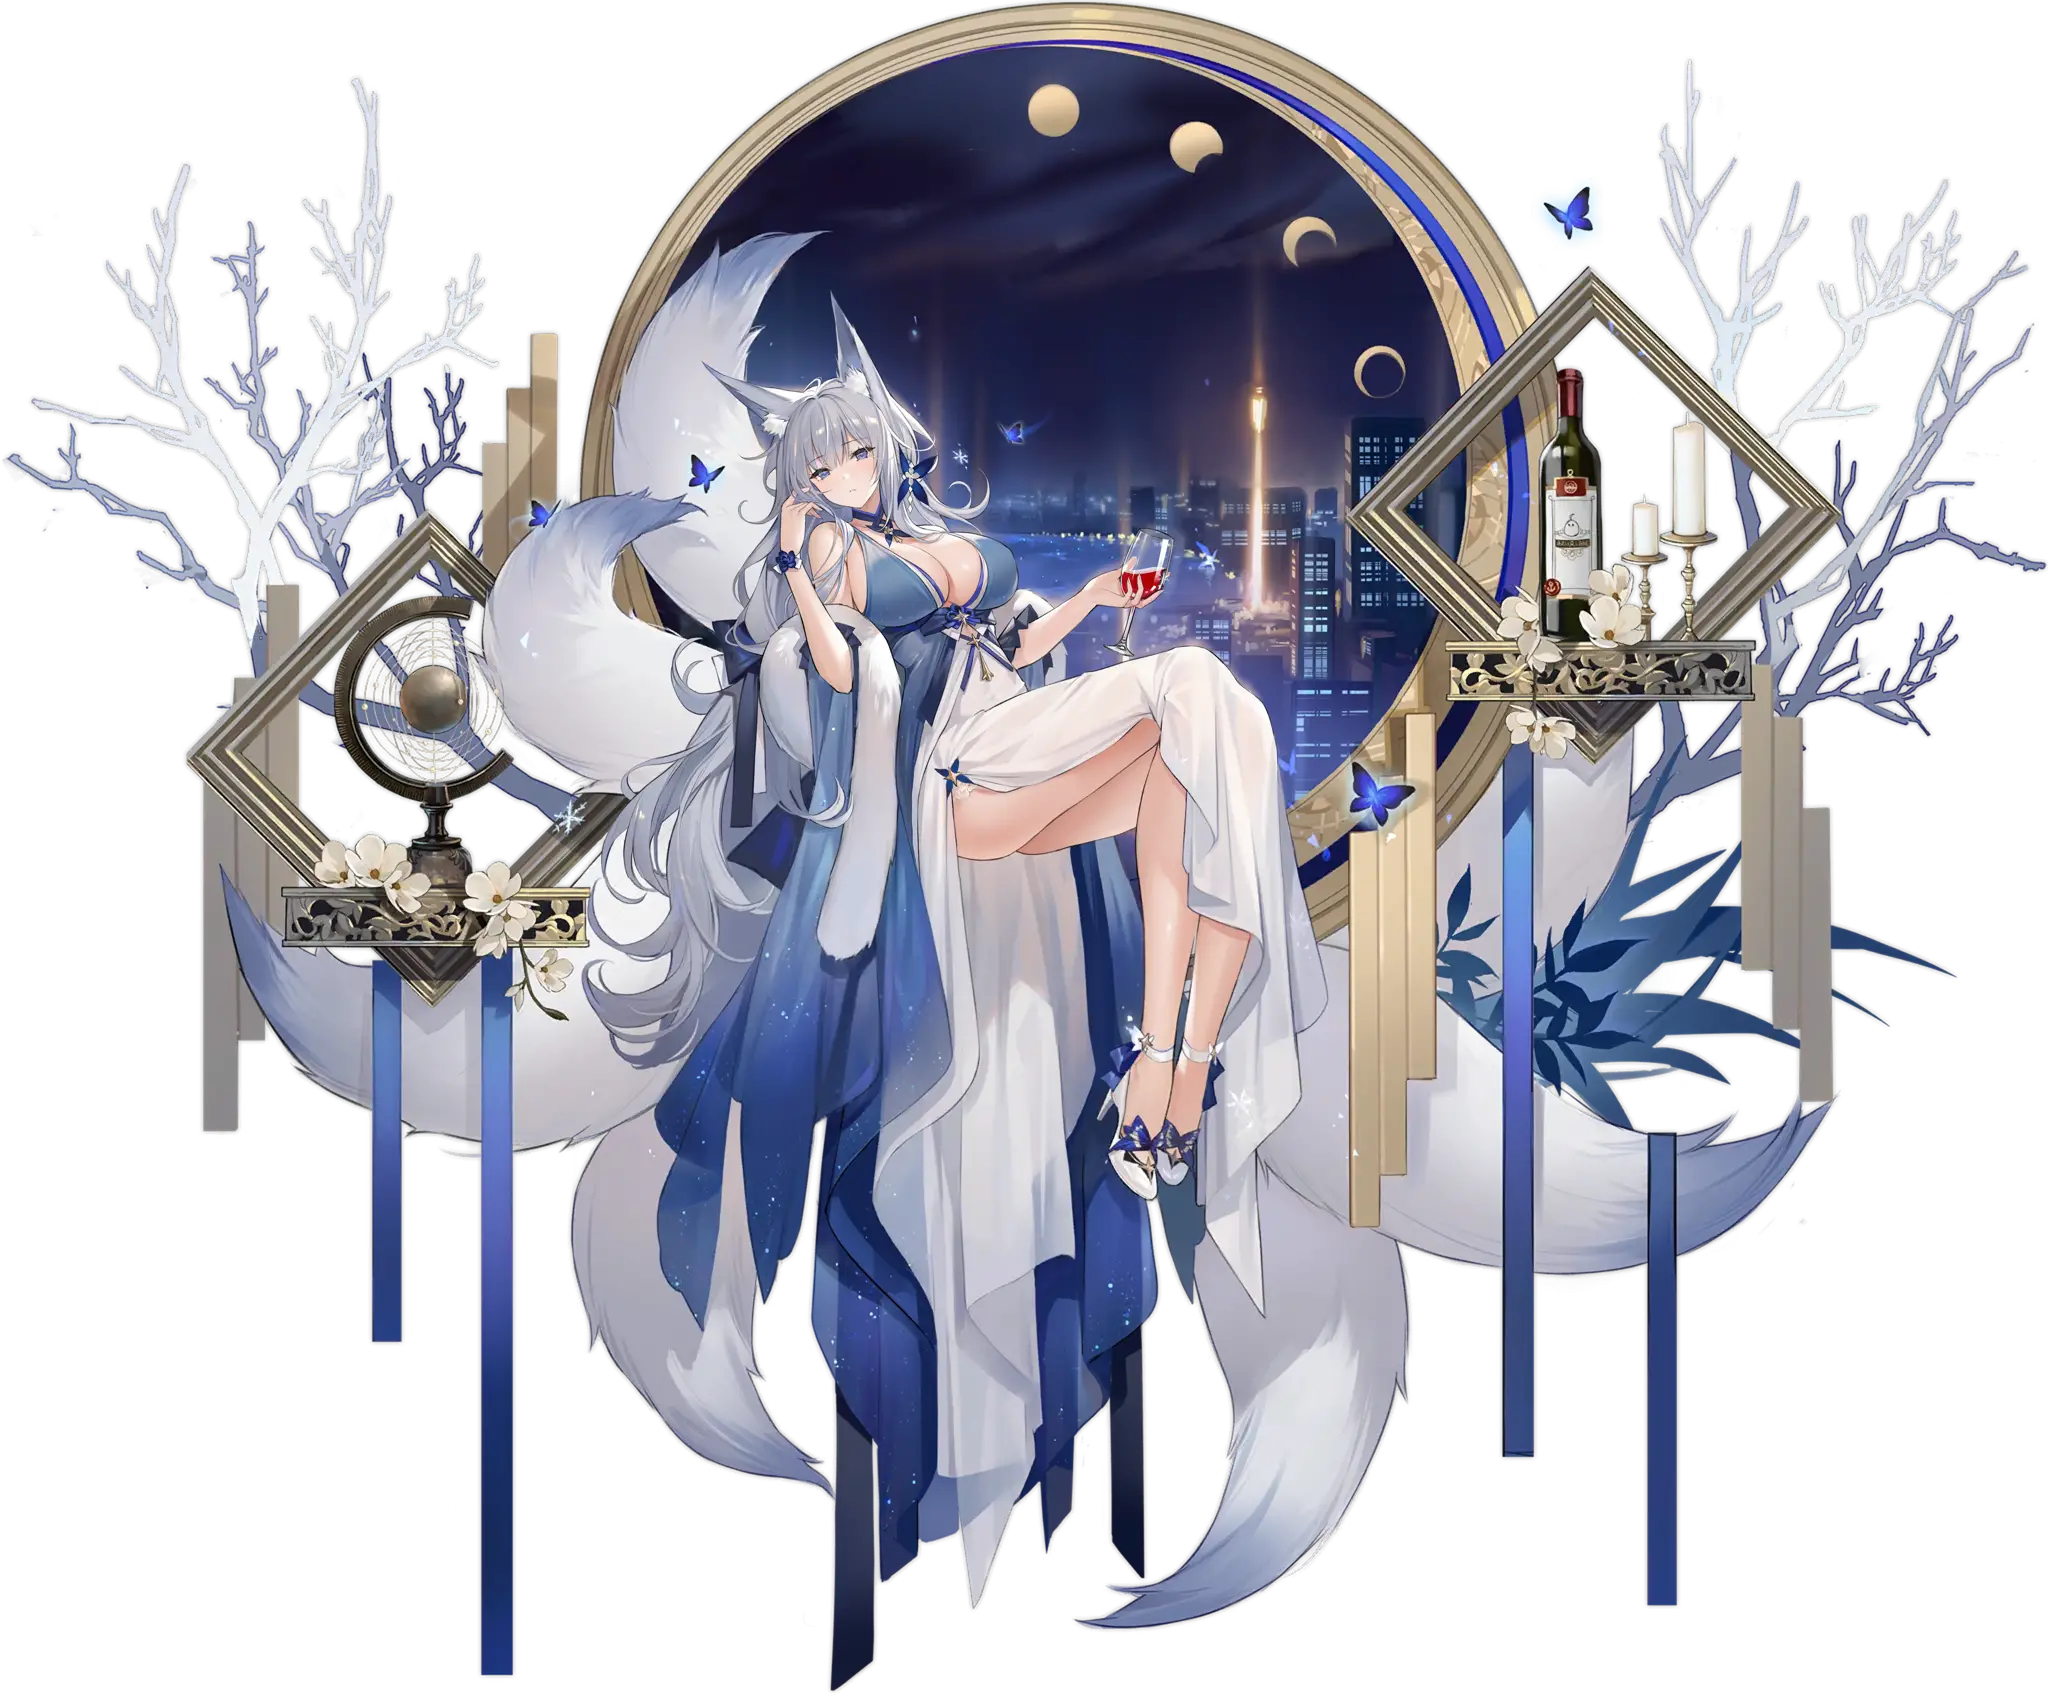 Illustration du skin : "Dreams of the Hazy Moon" du personnage de Shinano, le porte-avions de classe Yamato de la faction Sakura Empire, dessinée par Soaryuna et disponible dans le jeu "Azur Lane".